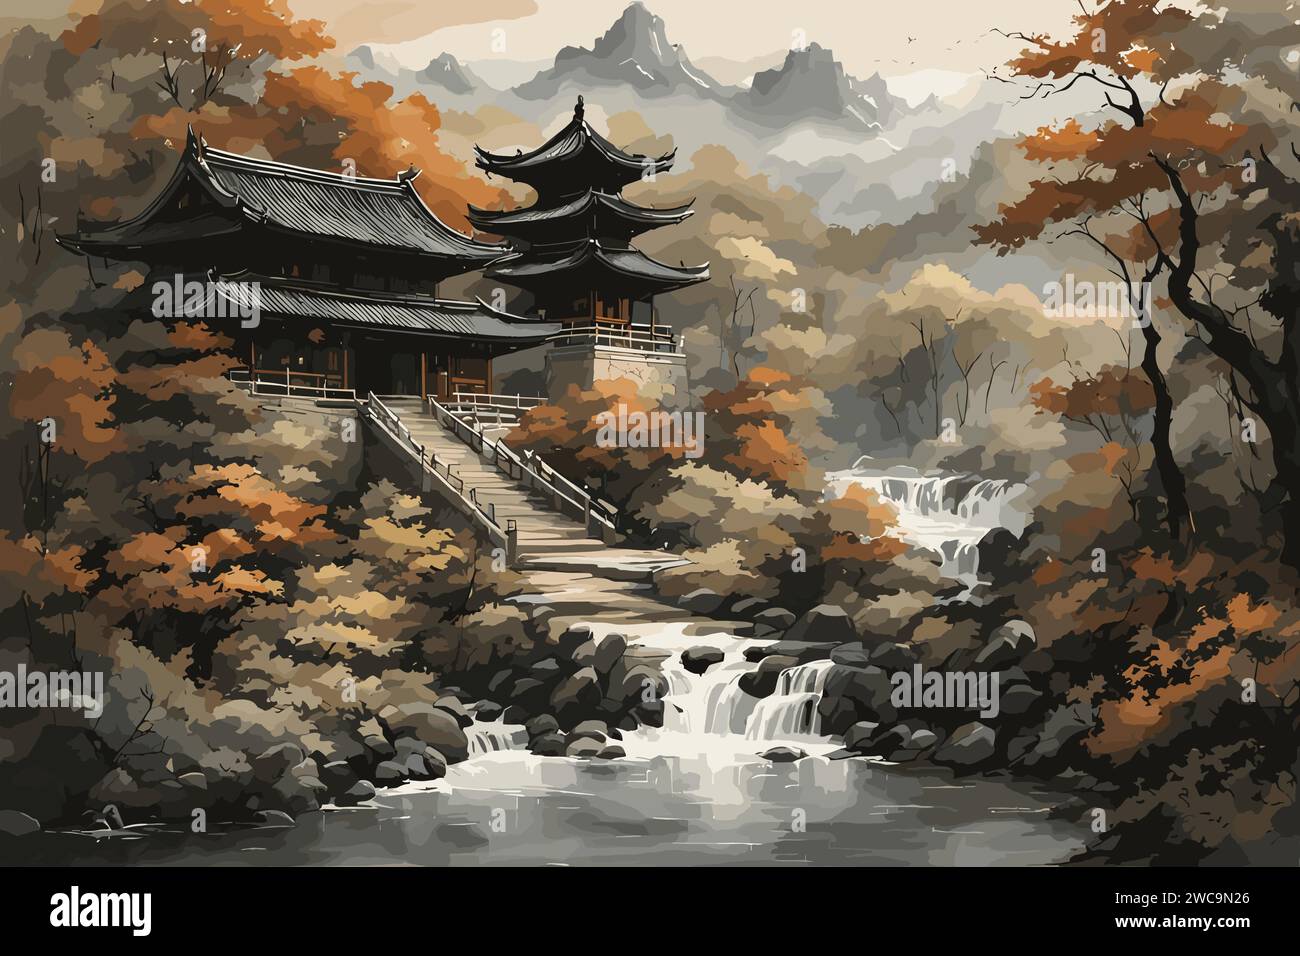 Peinture à l'encre chinoise château traditionnel Illustration de Vecteur